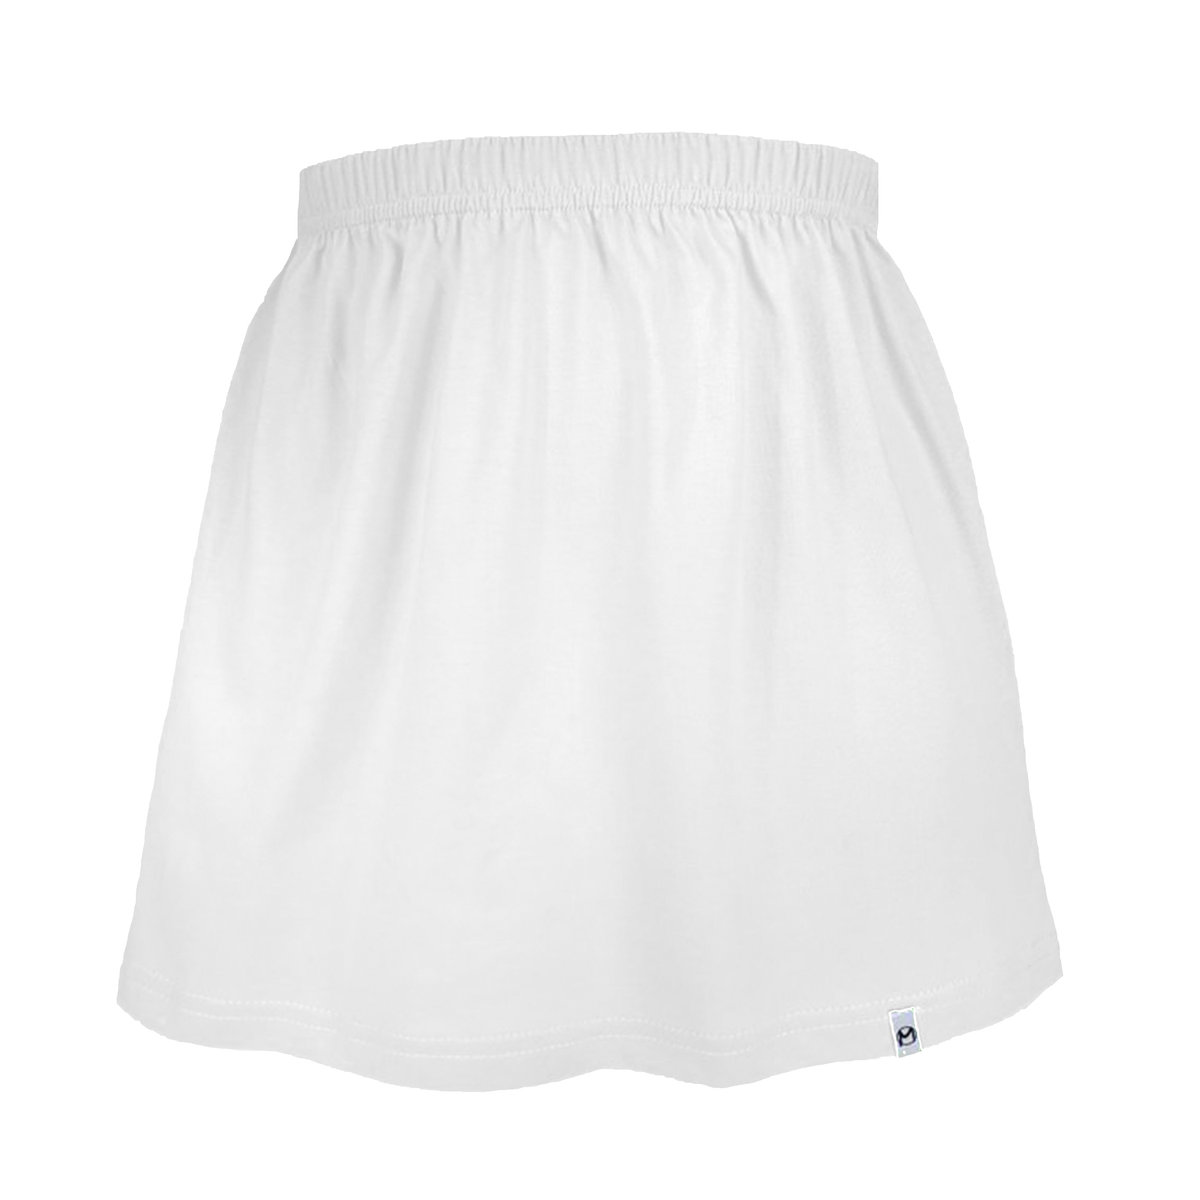 Biała spódniczka dla dziewczynki bawełniana spódnica dziecięca/ dziewczęca gładka 116/122